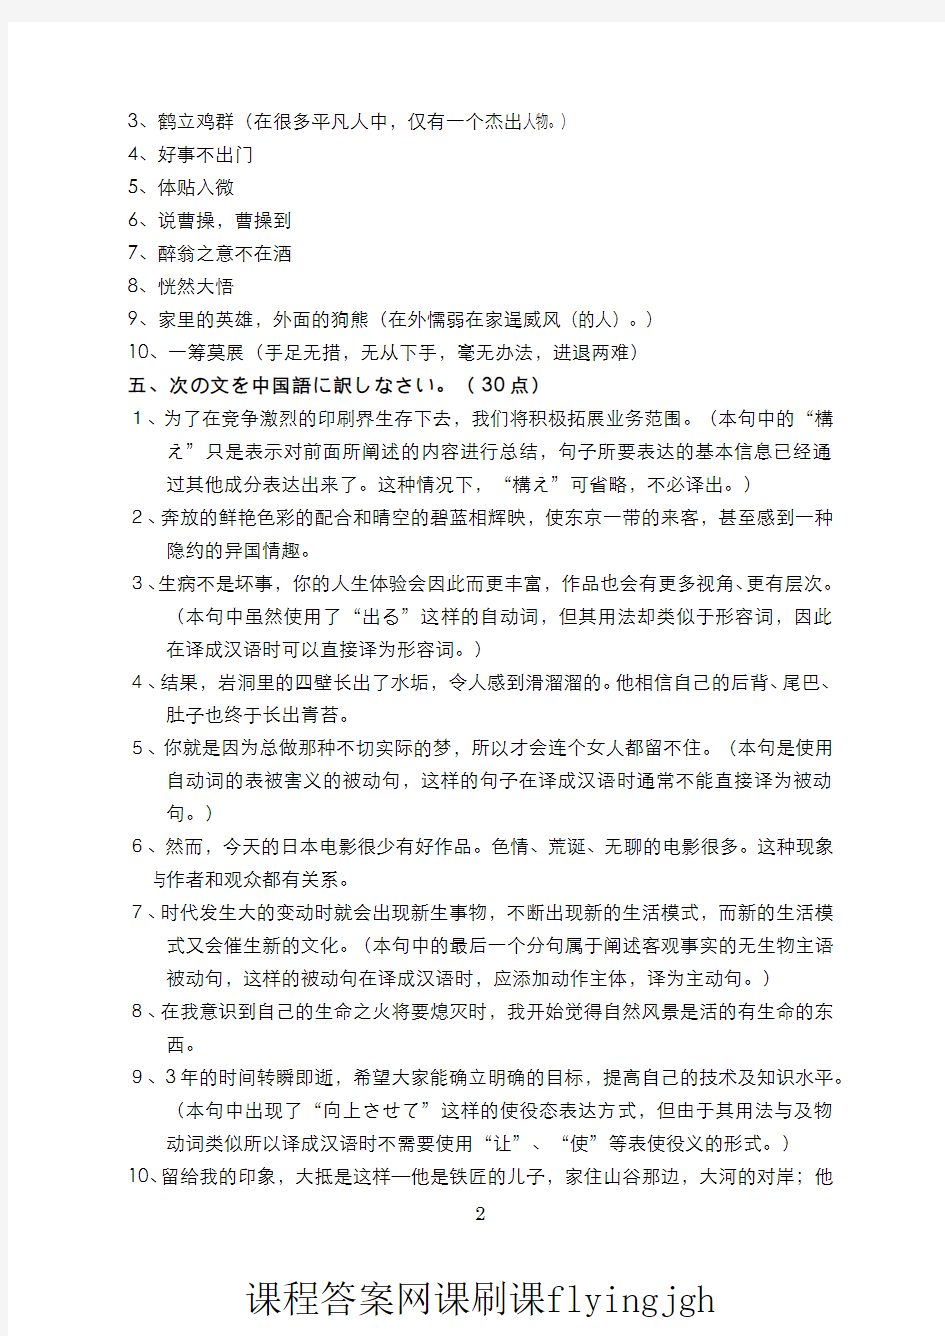 中国大学MOOC慕课爱课程(12)--日语翻译理论与实践日译汉部分期中考试试卷2(答案)网课刷课